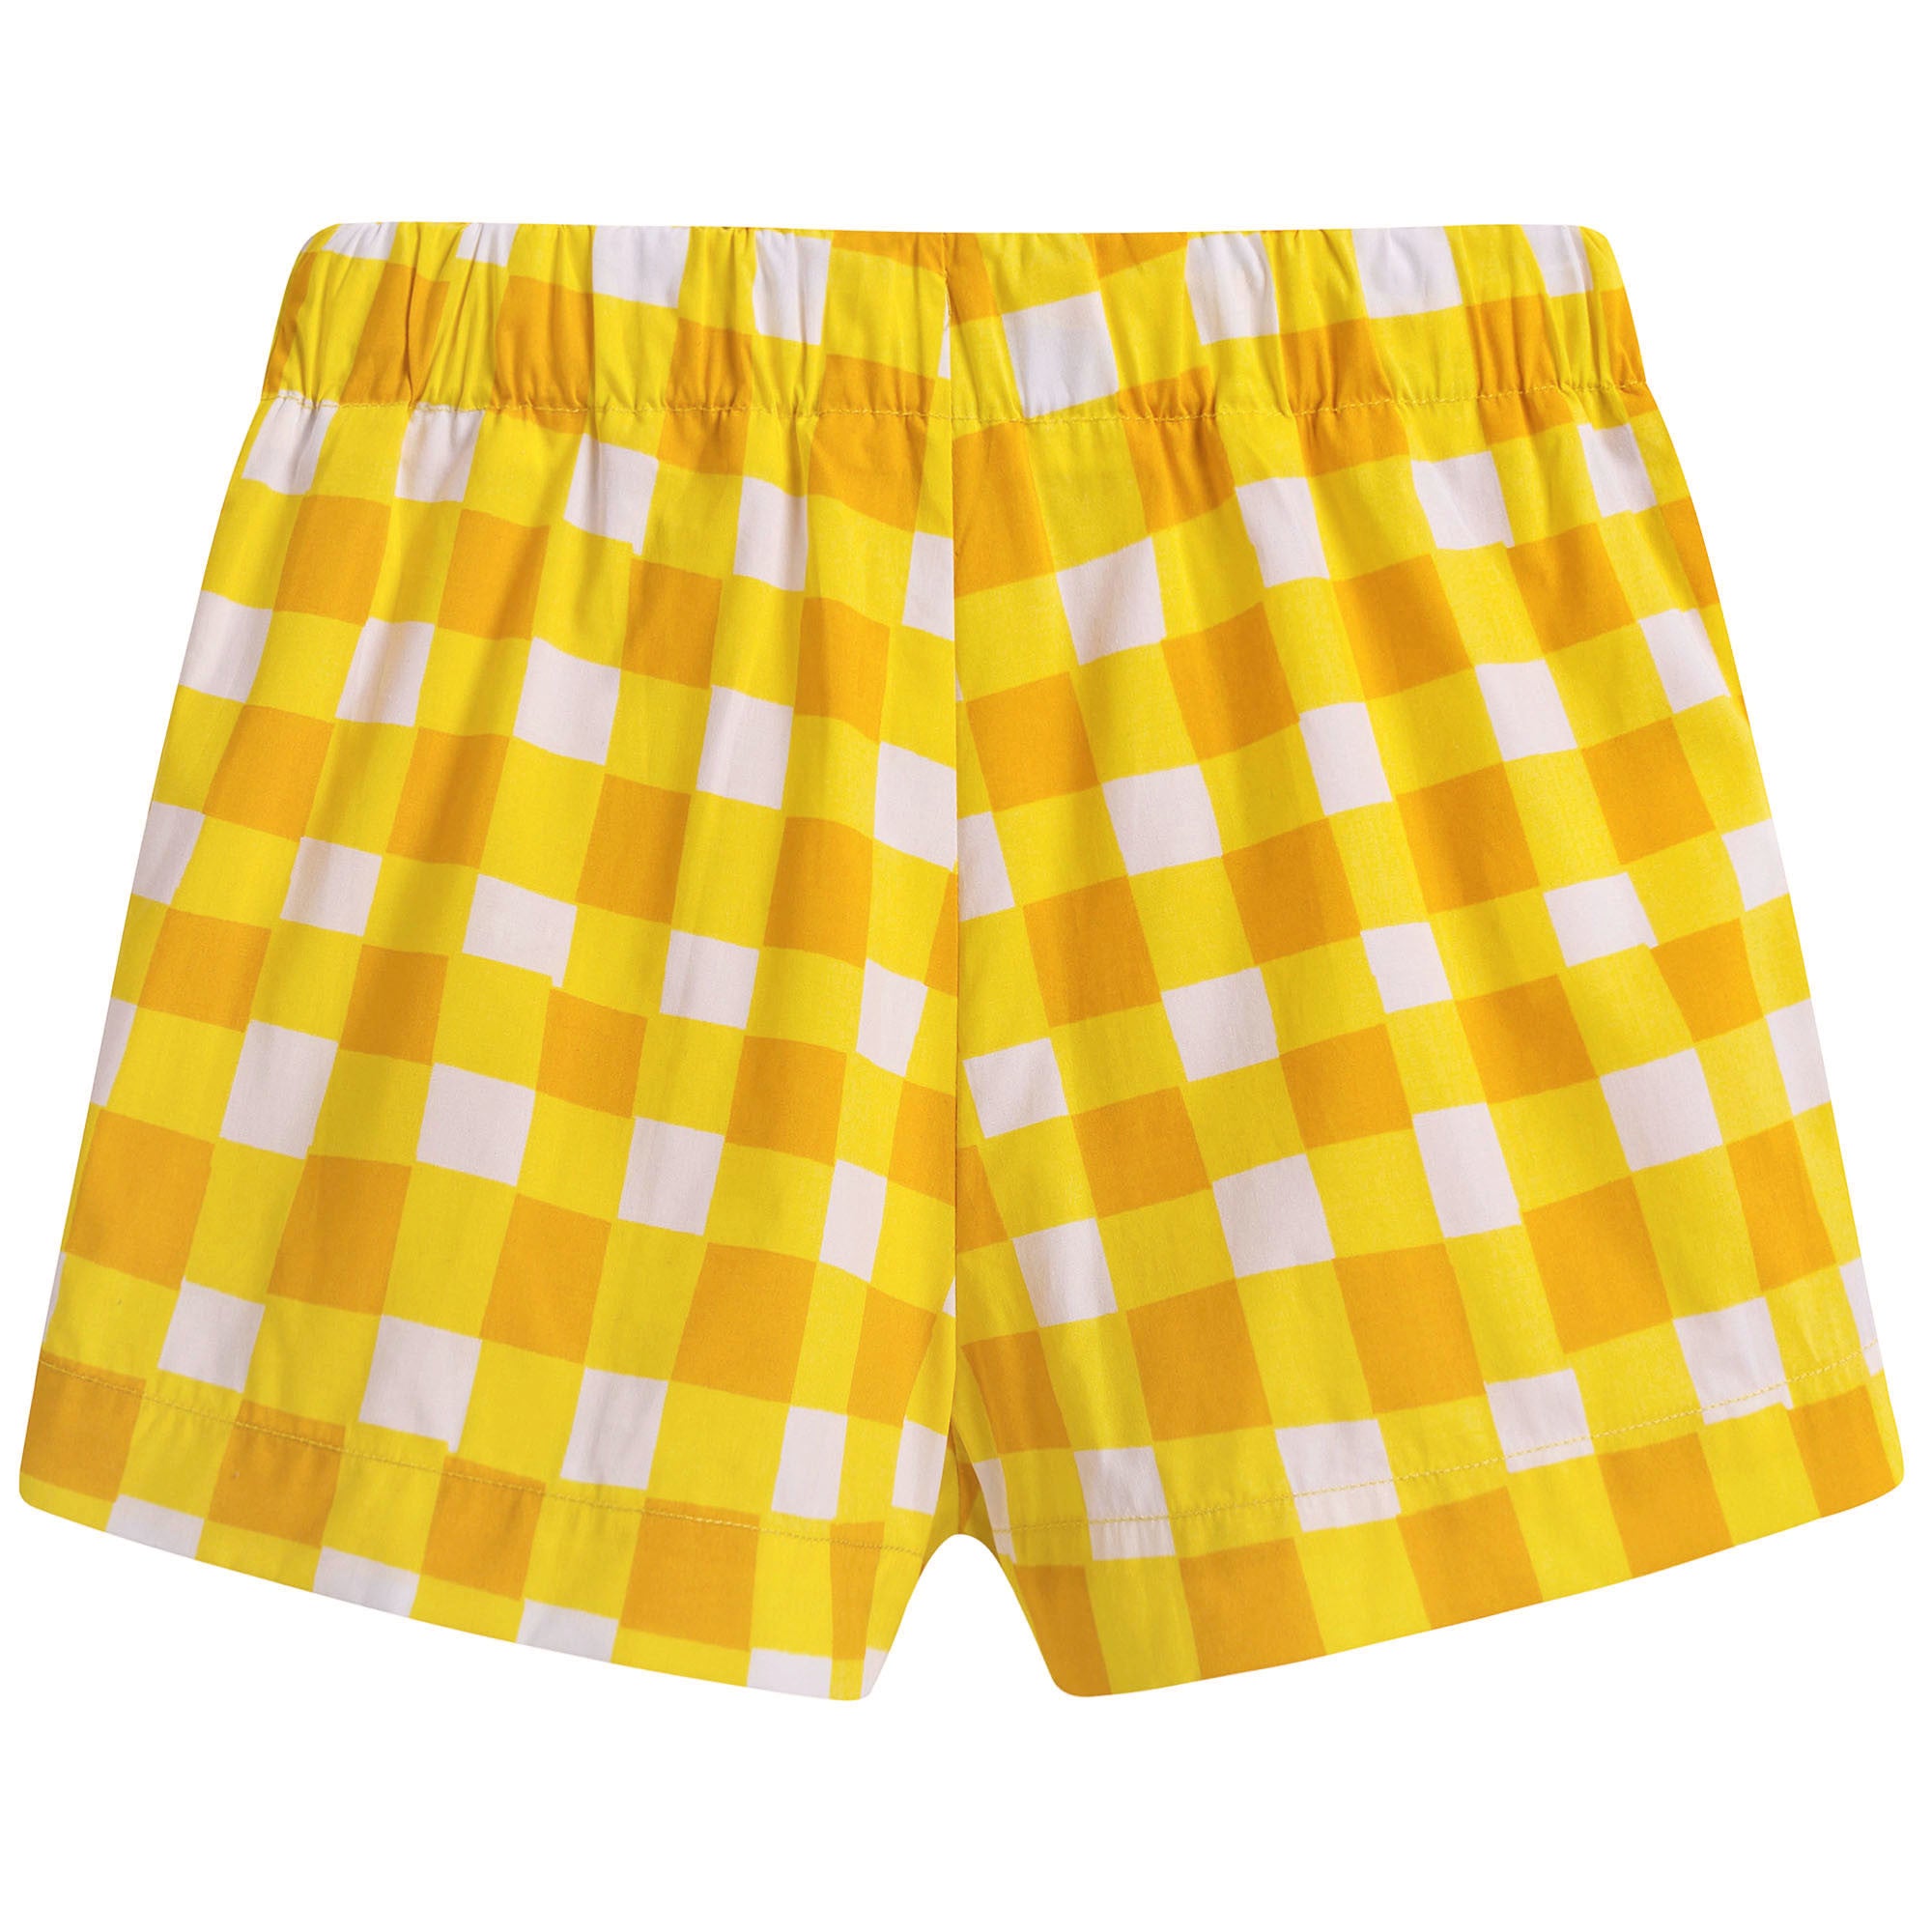 Girls Yellow Checked Shorts